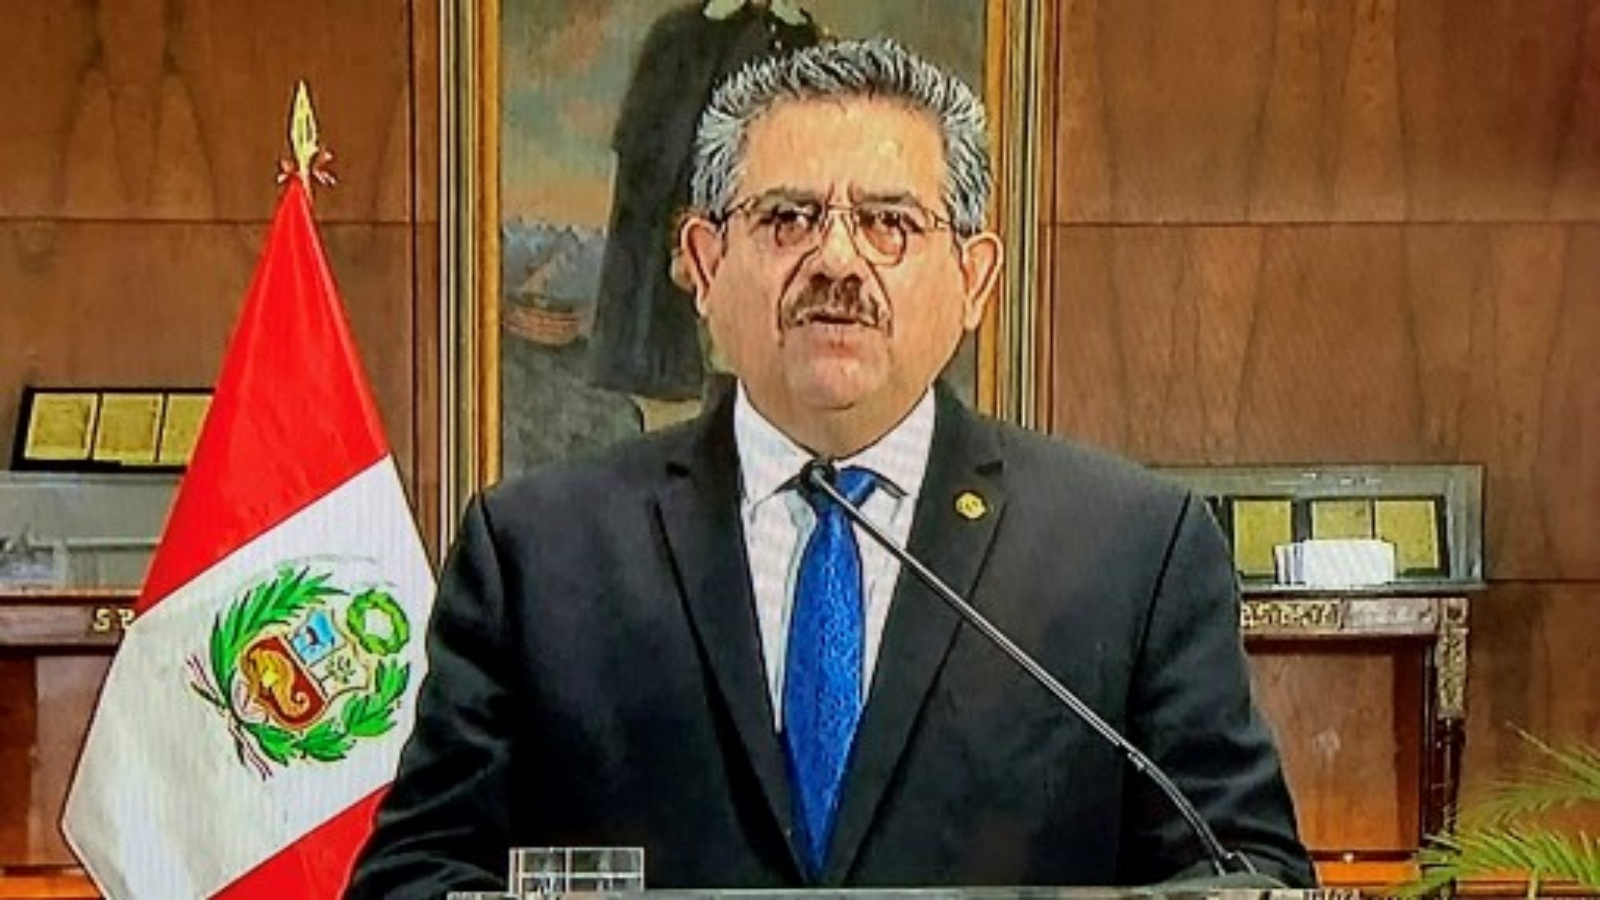 صورة من التلفزيون مع إعلان الرئيس البيروفي المؤقت مانويل ميرينو استقالته في رسالة متلفزة من القصر الحكومي في 15 نوفمبر 2020